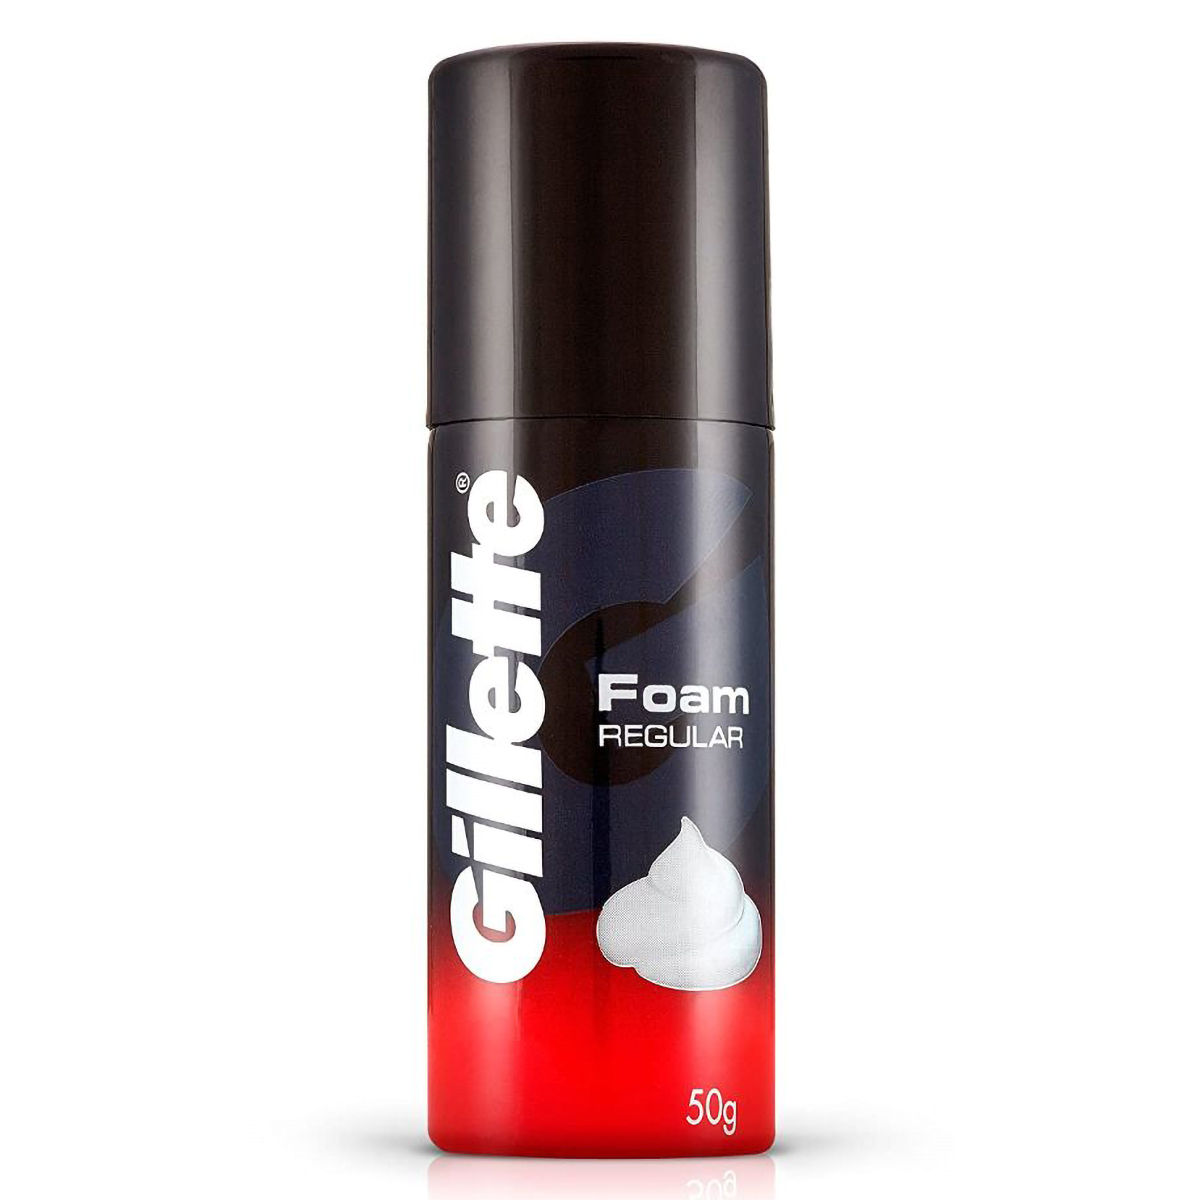 Buy Gillette Shaving Foam Regular, 50 gm Online